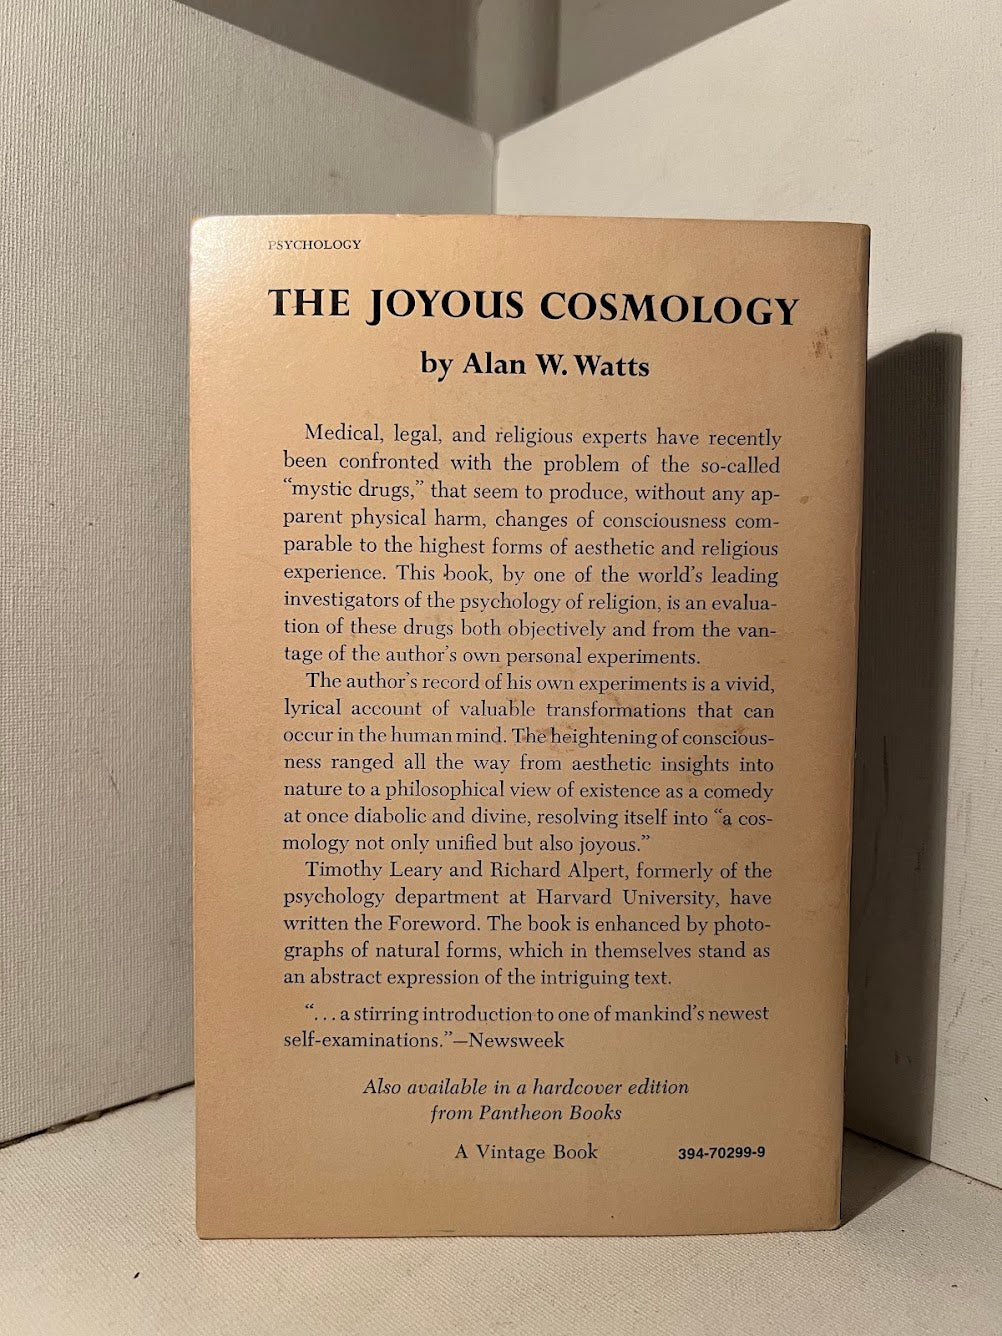 The Joyous Cosmology by Alan W. Watts